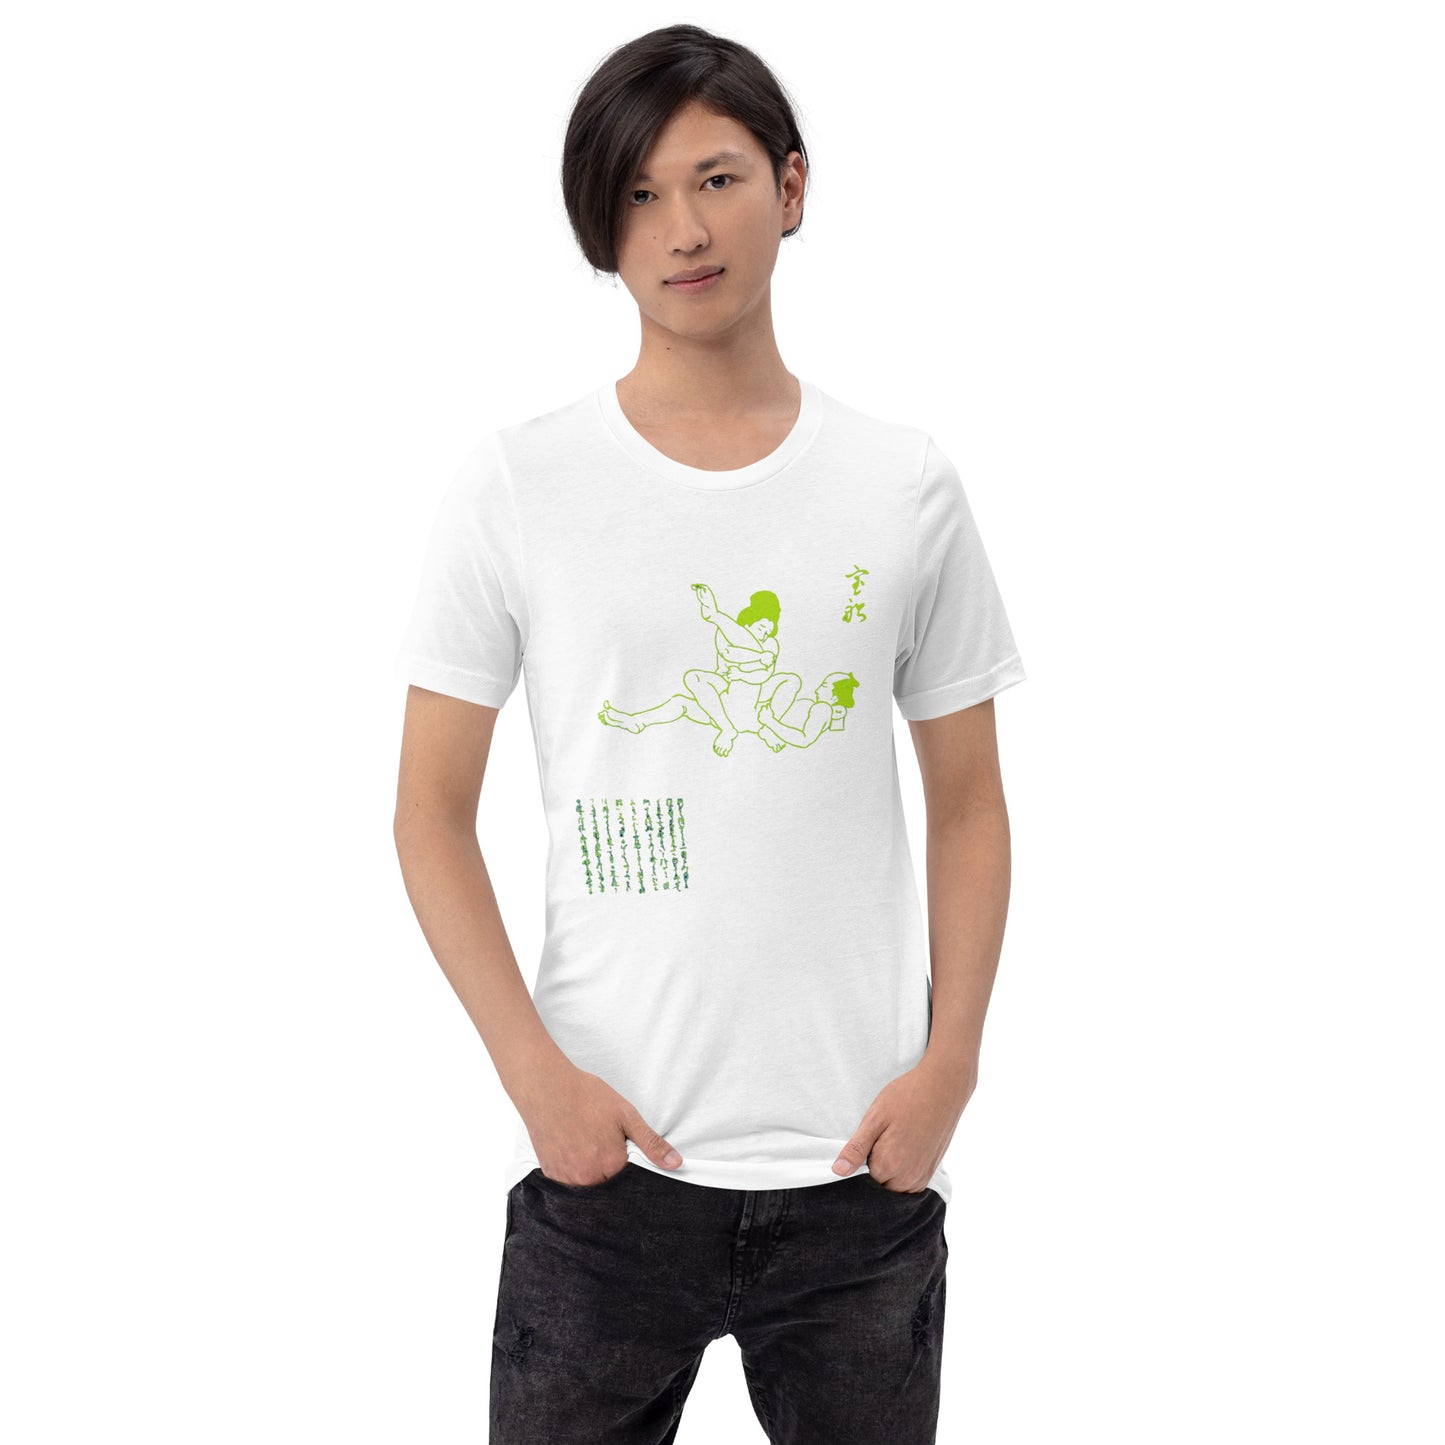 Unisex t-shirt "52 TAKARABUNE" White